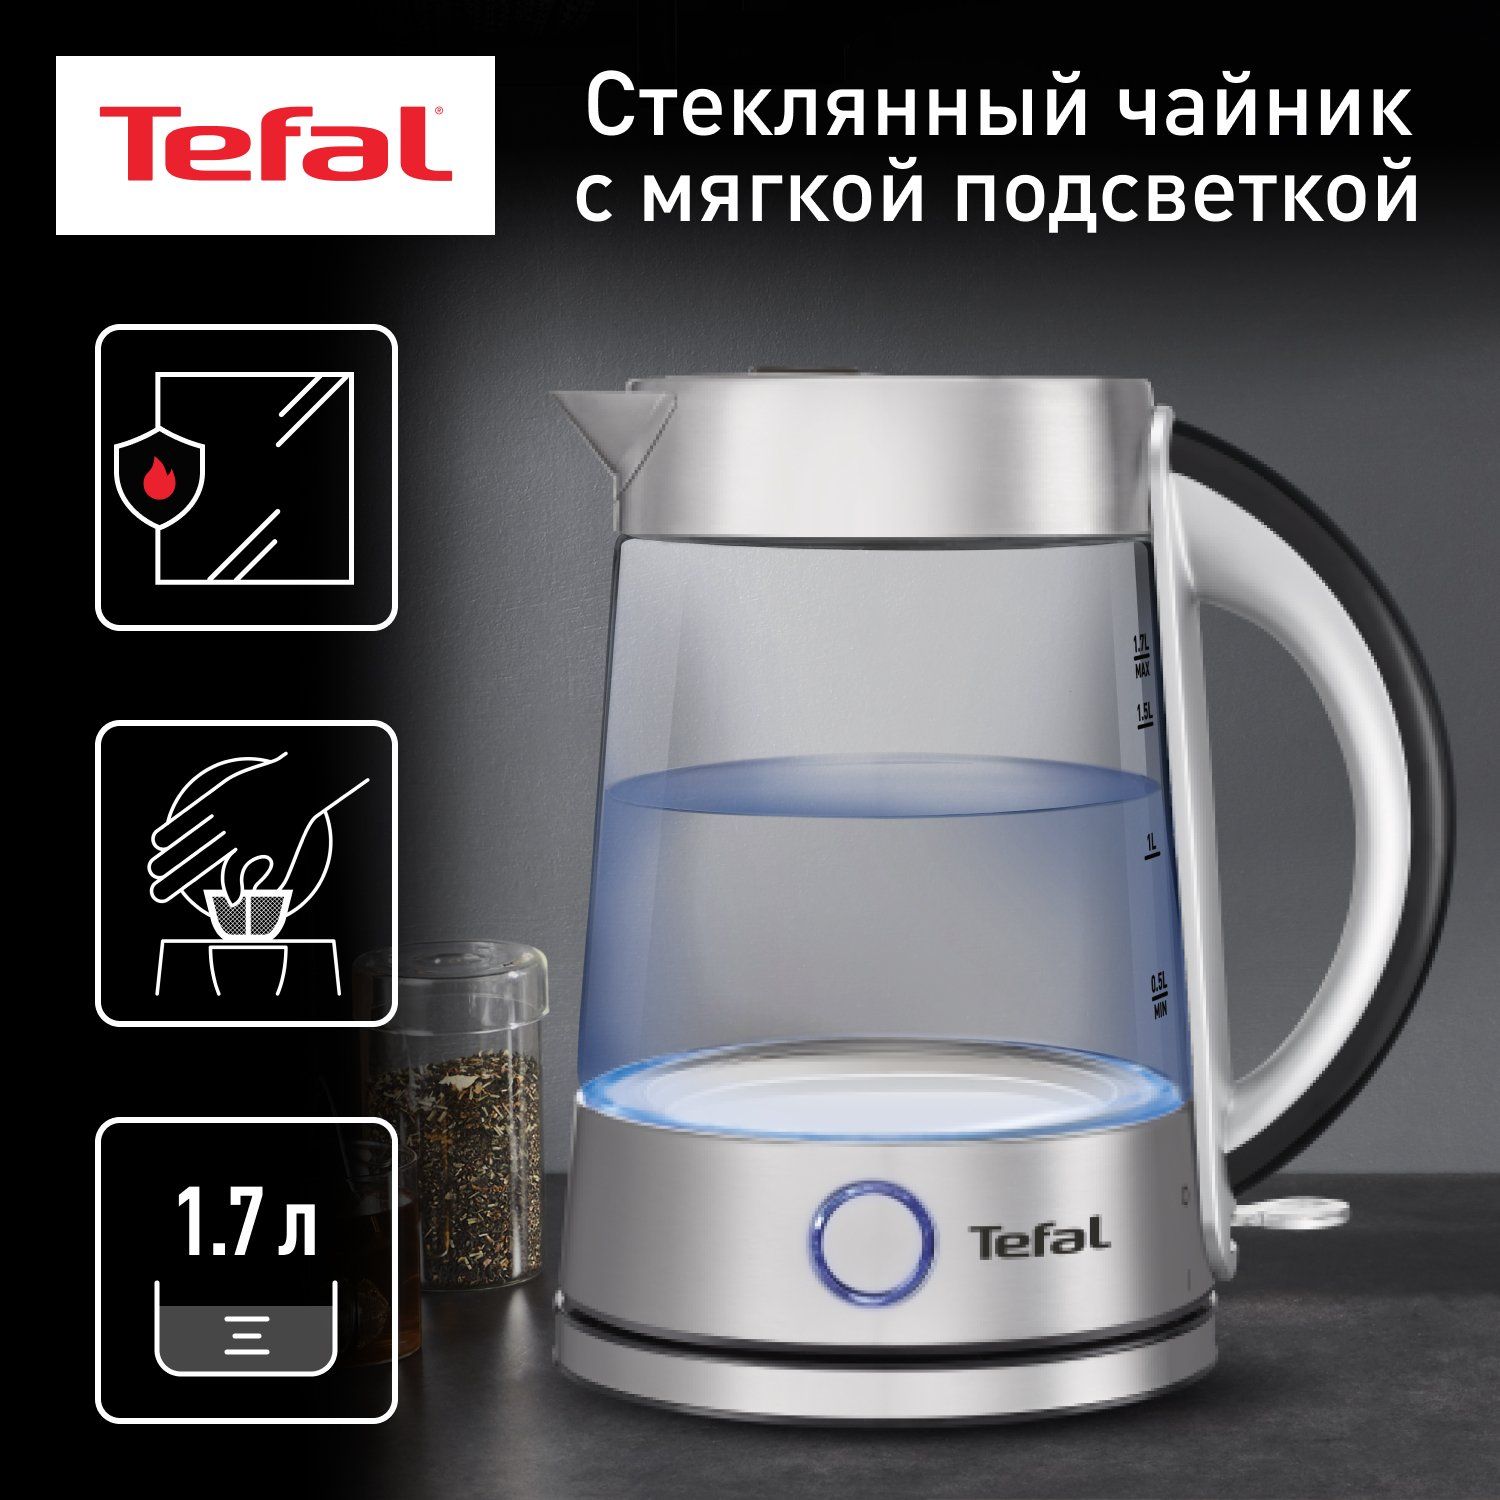 Чайник электрический Tefal Glass Kettle KI760D30, 1.7 л, серебристый/черный чайник электрический tefal glass kettle ki760d30 1 7 л серебристый